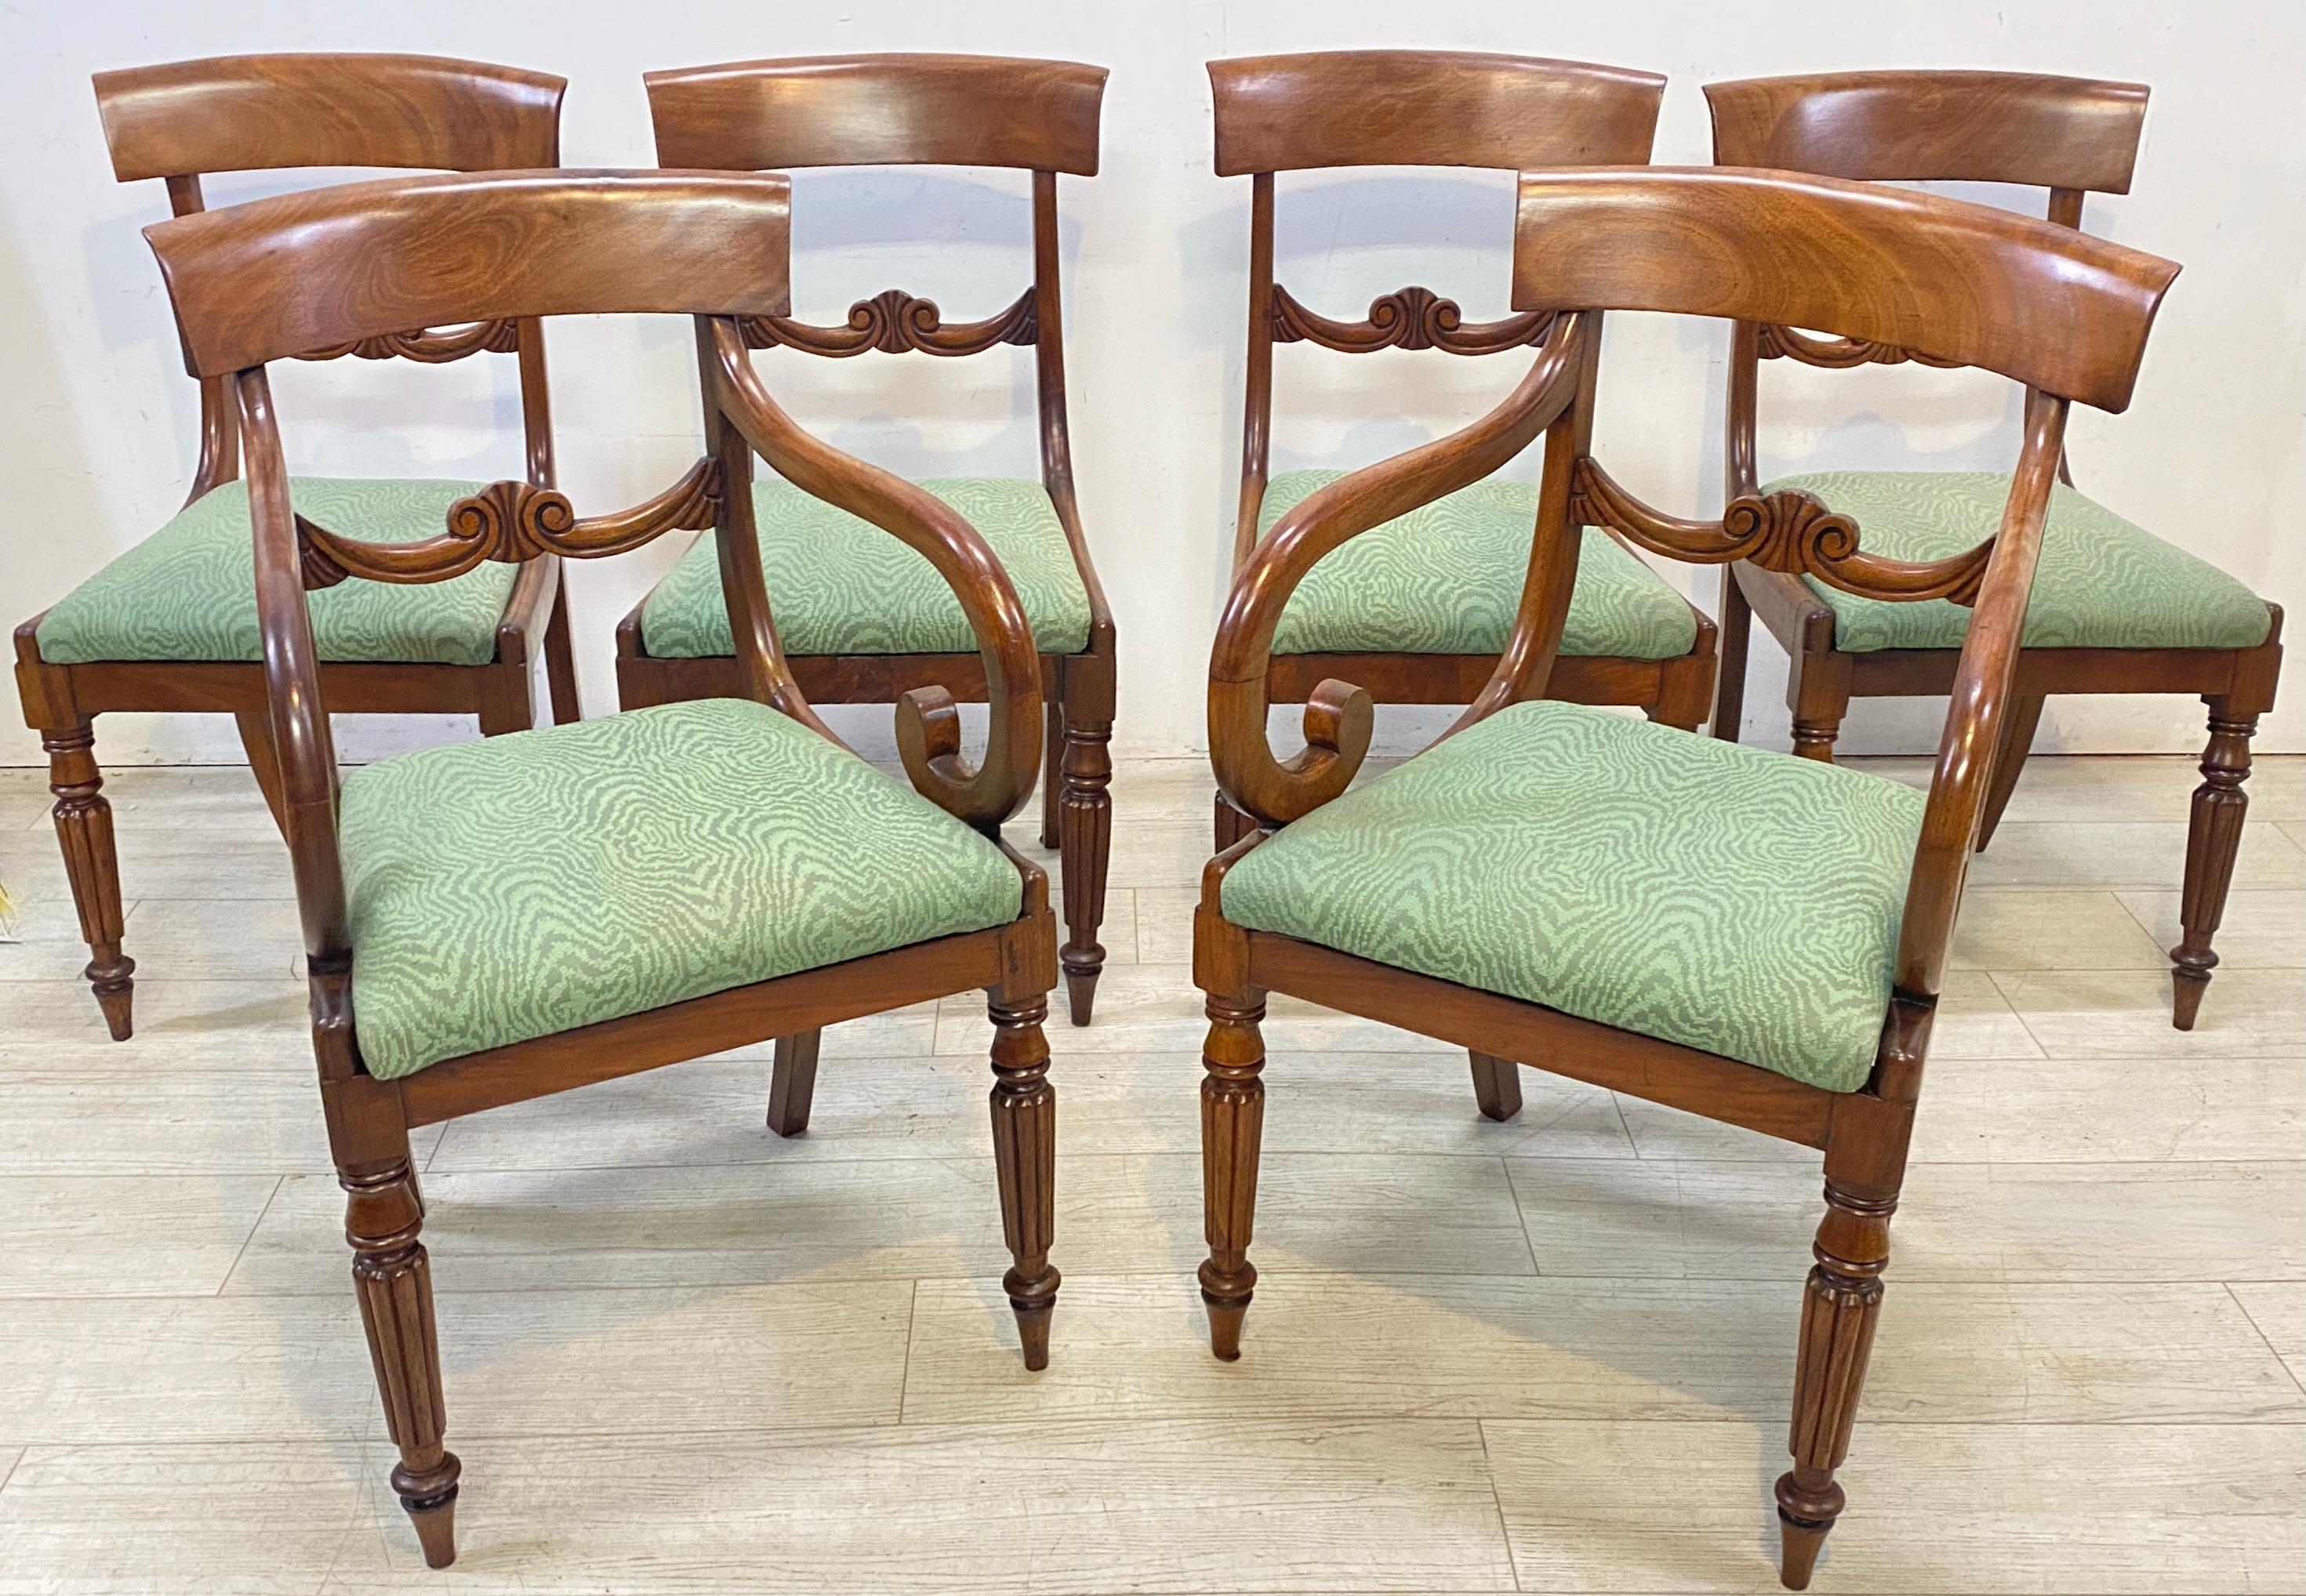 Englischer Satz von sechs William IV Esstischstühlen aus massivem Mahagoni, um 1830. Das Set besteht aus vier Beistellstühlen und zwei Sesseln mit gepolsterten Klappsitzen.
Die Polsterung ist in gutem Zustand (kann leicht wieder aufgepolstert